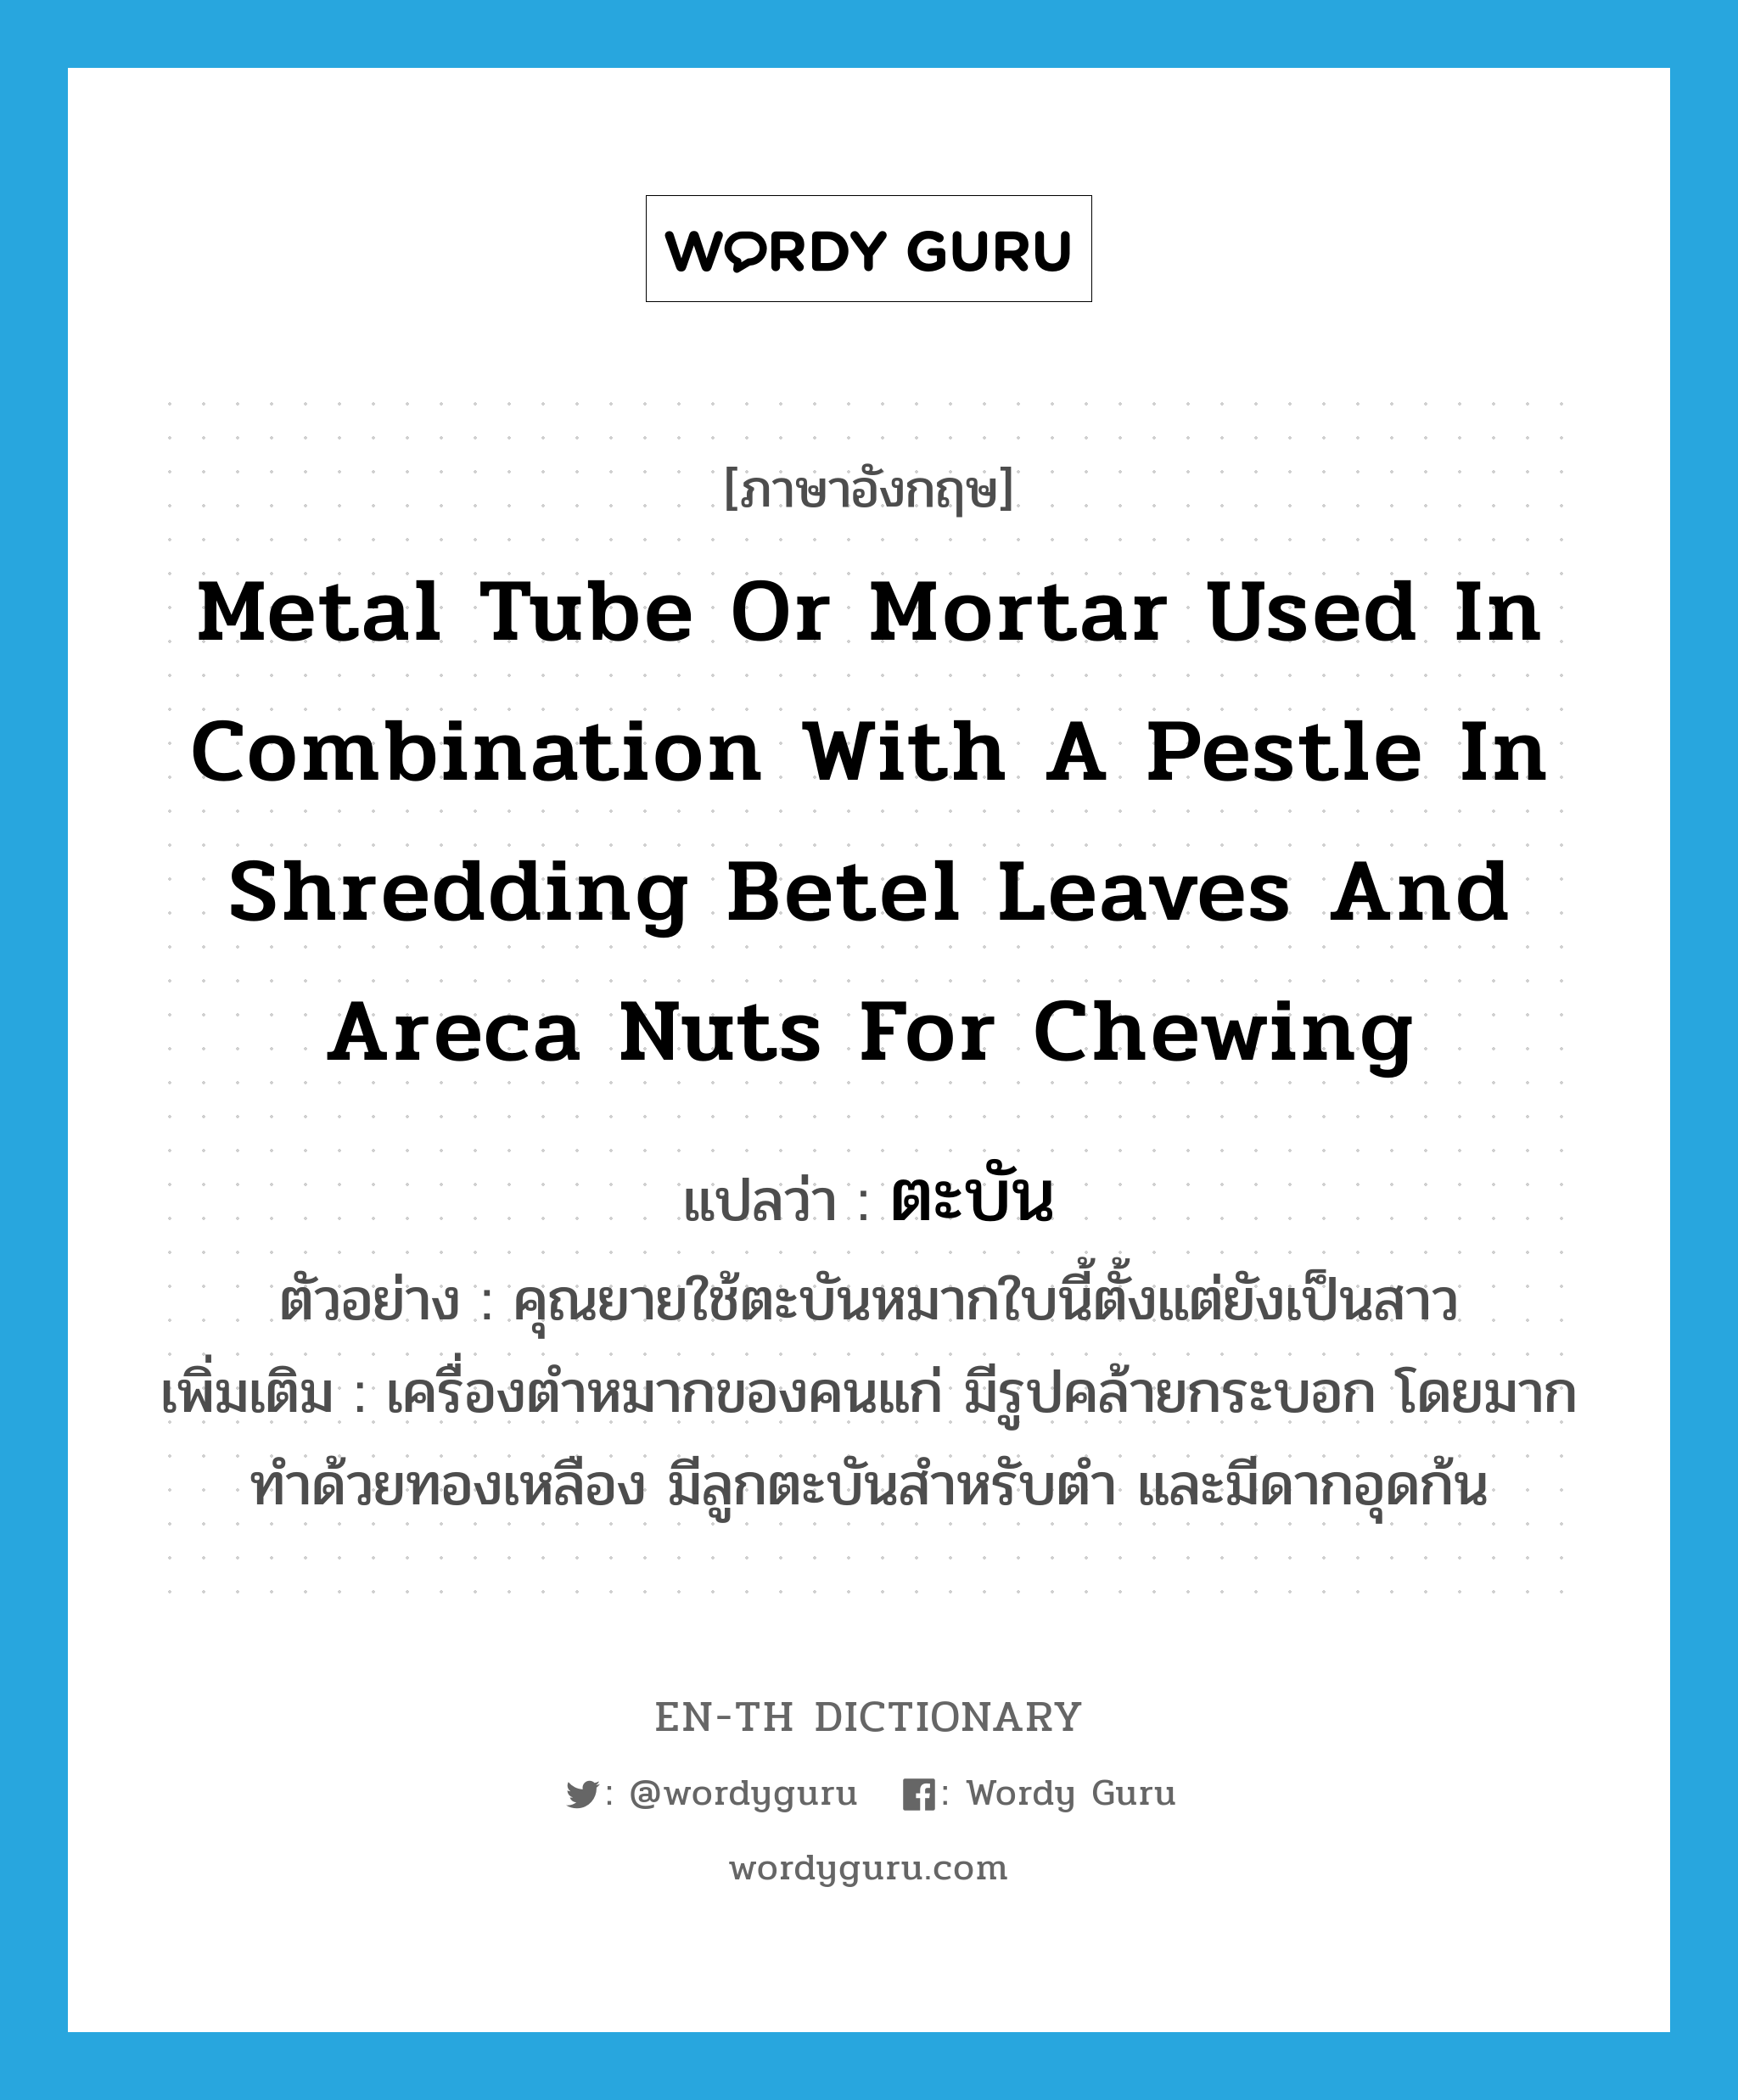 ตะบัน ภาษาอังกฤษ?, คำศัพท์ภาษาอังกฤษ ตะบัน แปลว่า metal tube or mortar used in combination with a pestle in shredding betel leaves and areca nuts for chewing ประเภท N ตัวอย่าง คุณยายใช้ตะบันหมากใบนี้ตั้งแต่ยังเป็นสาว เพิ่มเติม เครื่องตำหมากของคนแก่ มีรูปคล้ายกระบอก โดยมากทำด้วยทองเหลือง มีลูกตะบันสำหรับตำ และมีดากอุดก้น หมวด N